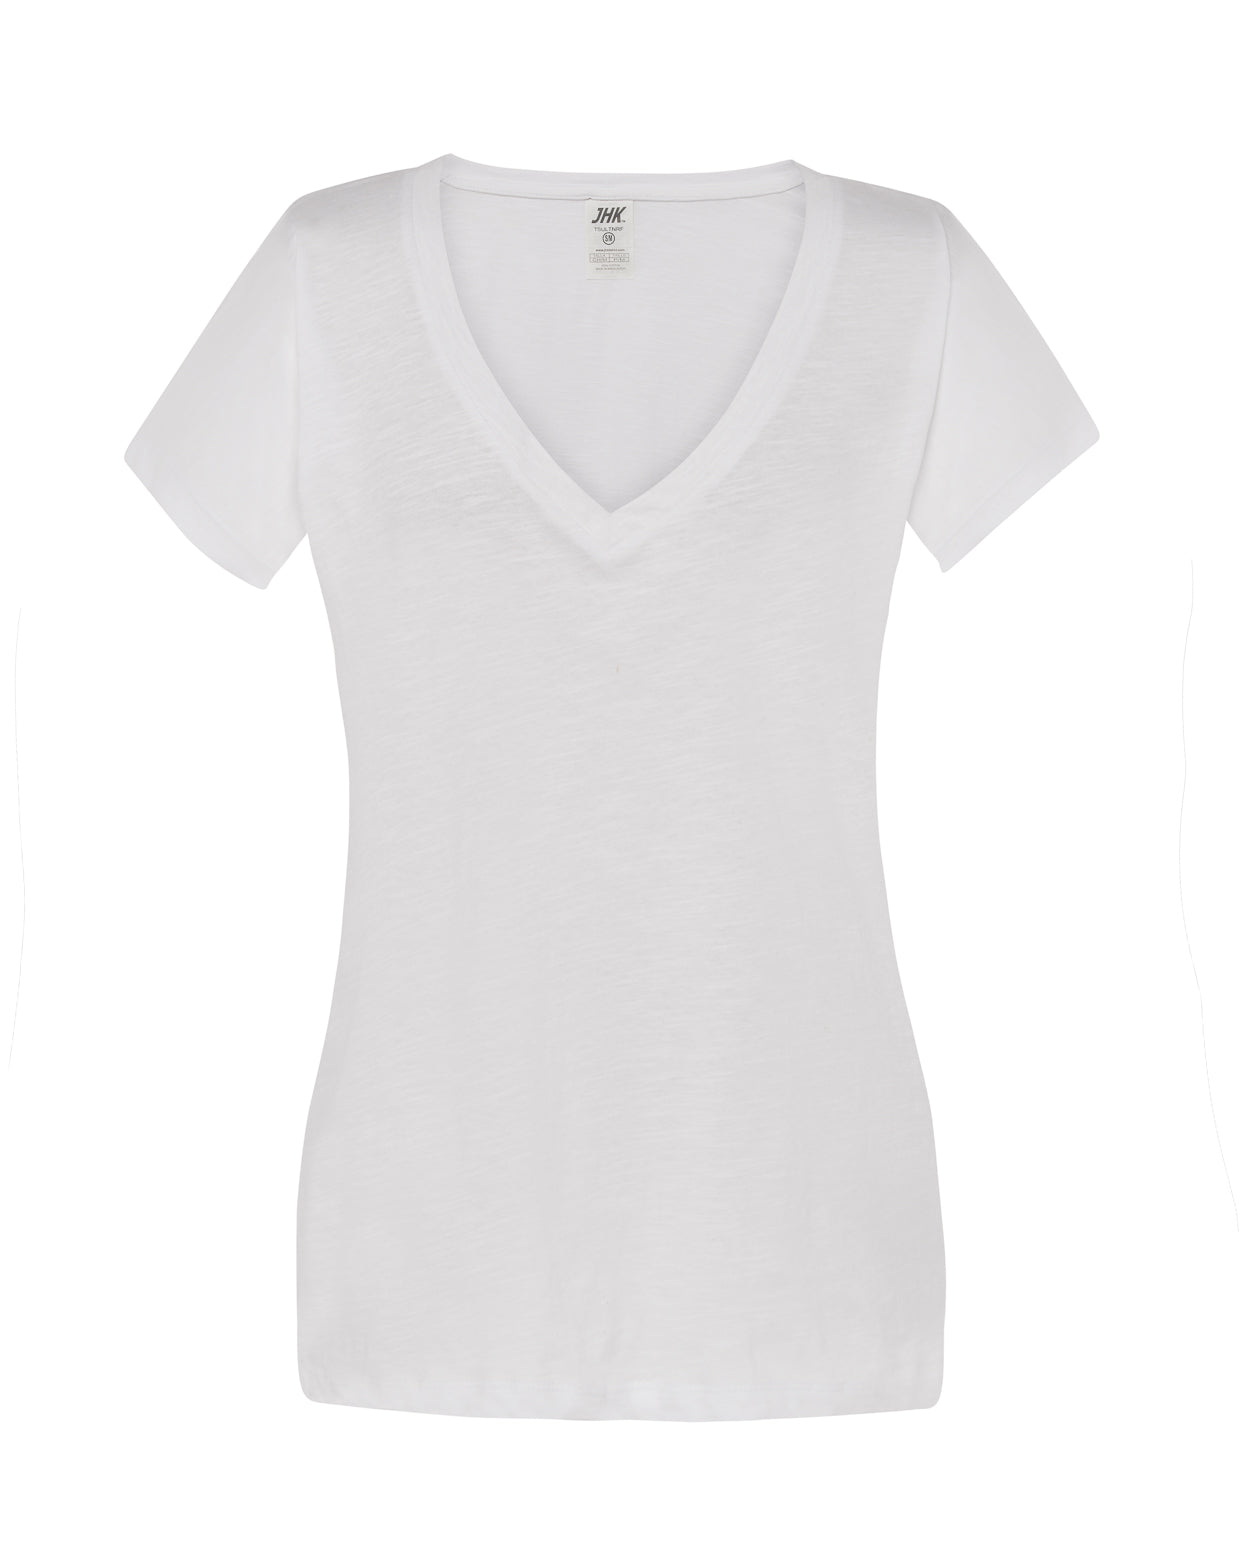 Camiseta de mujer manga corta y escote de pico - mr-personaliza